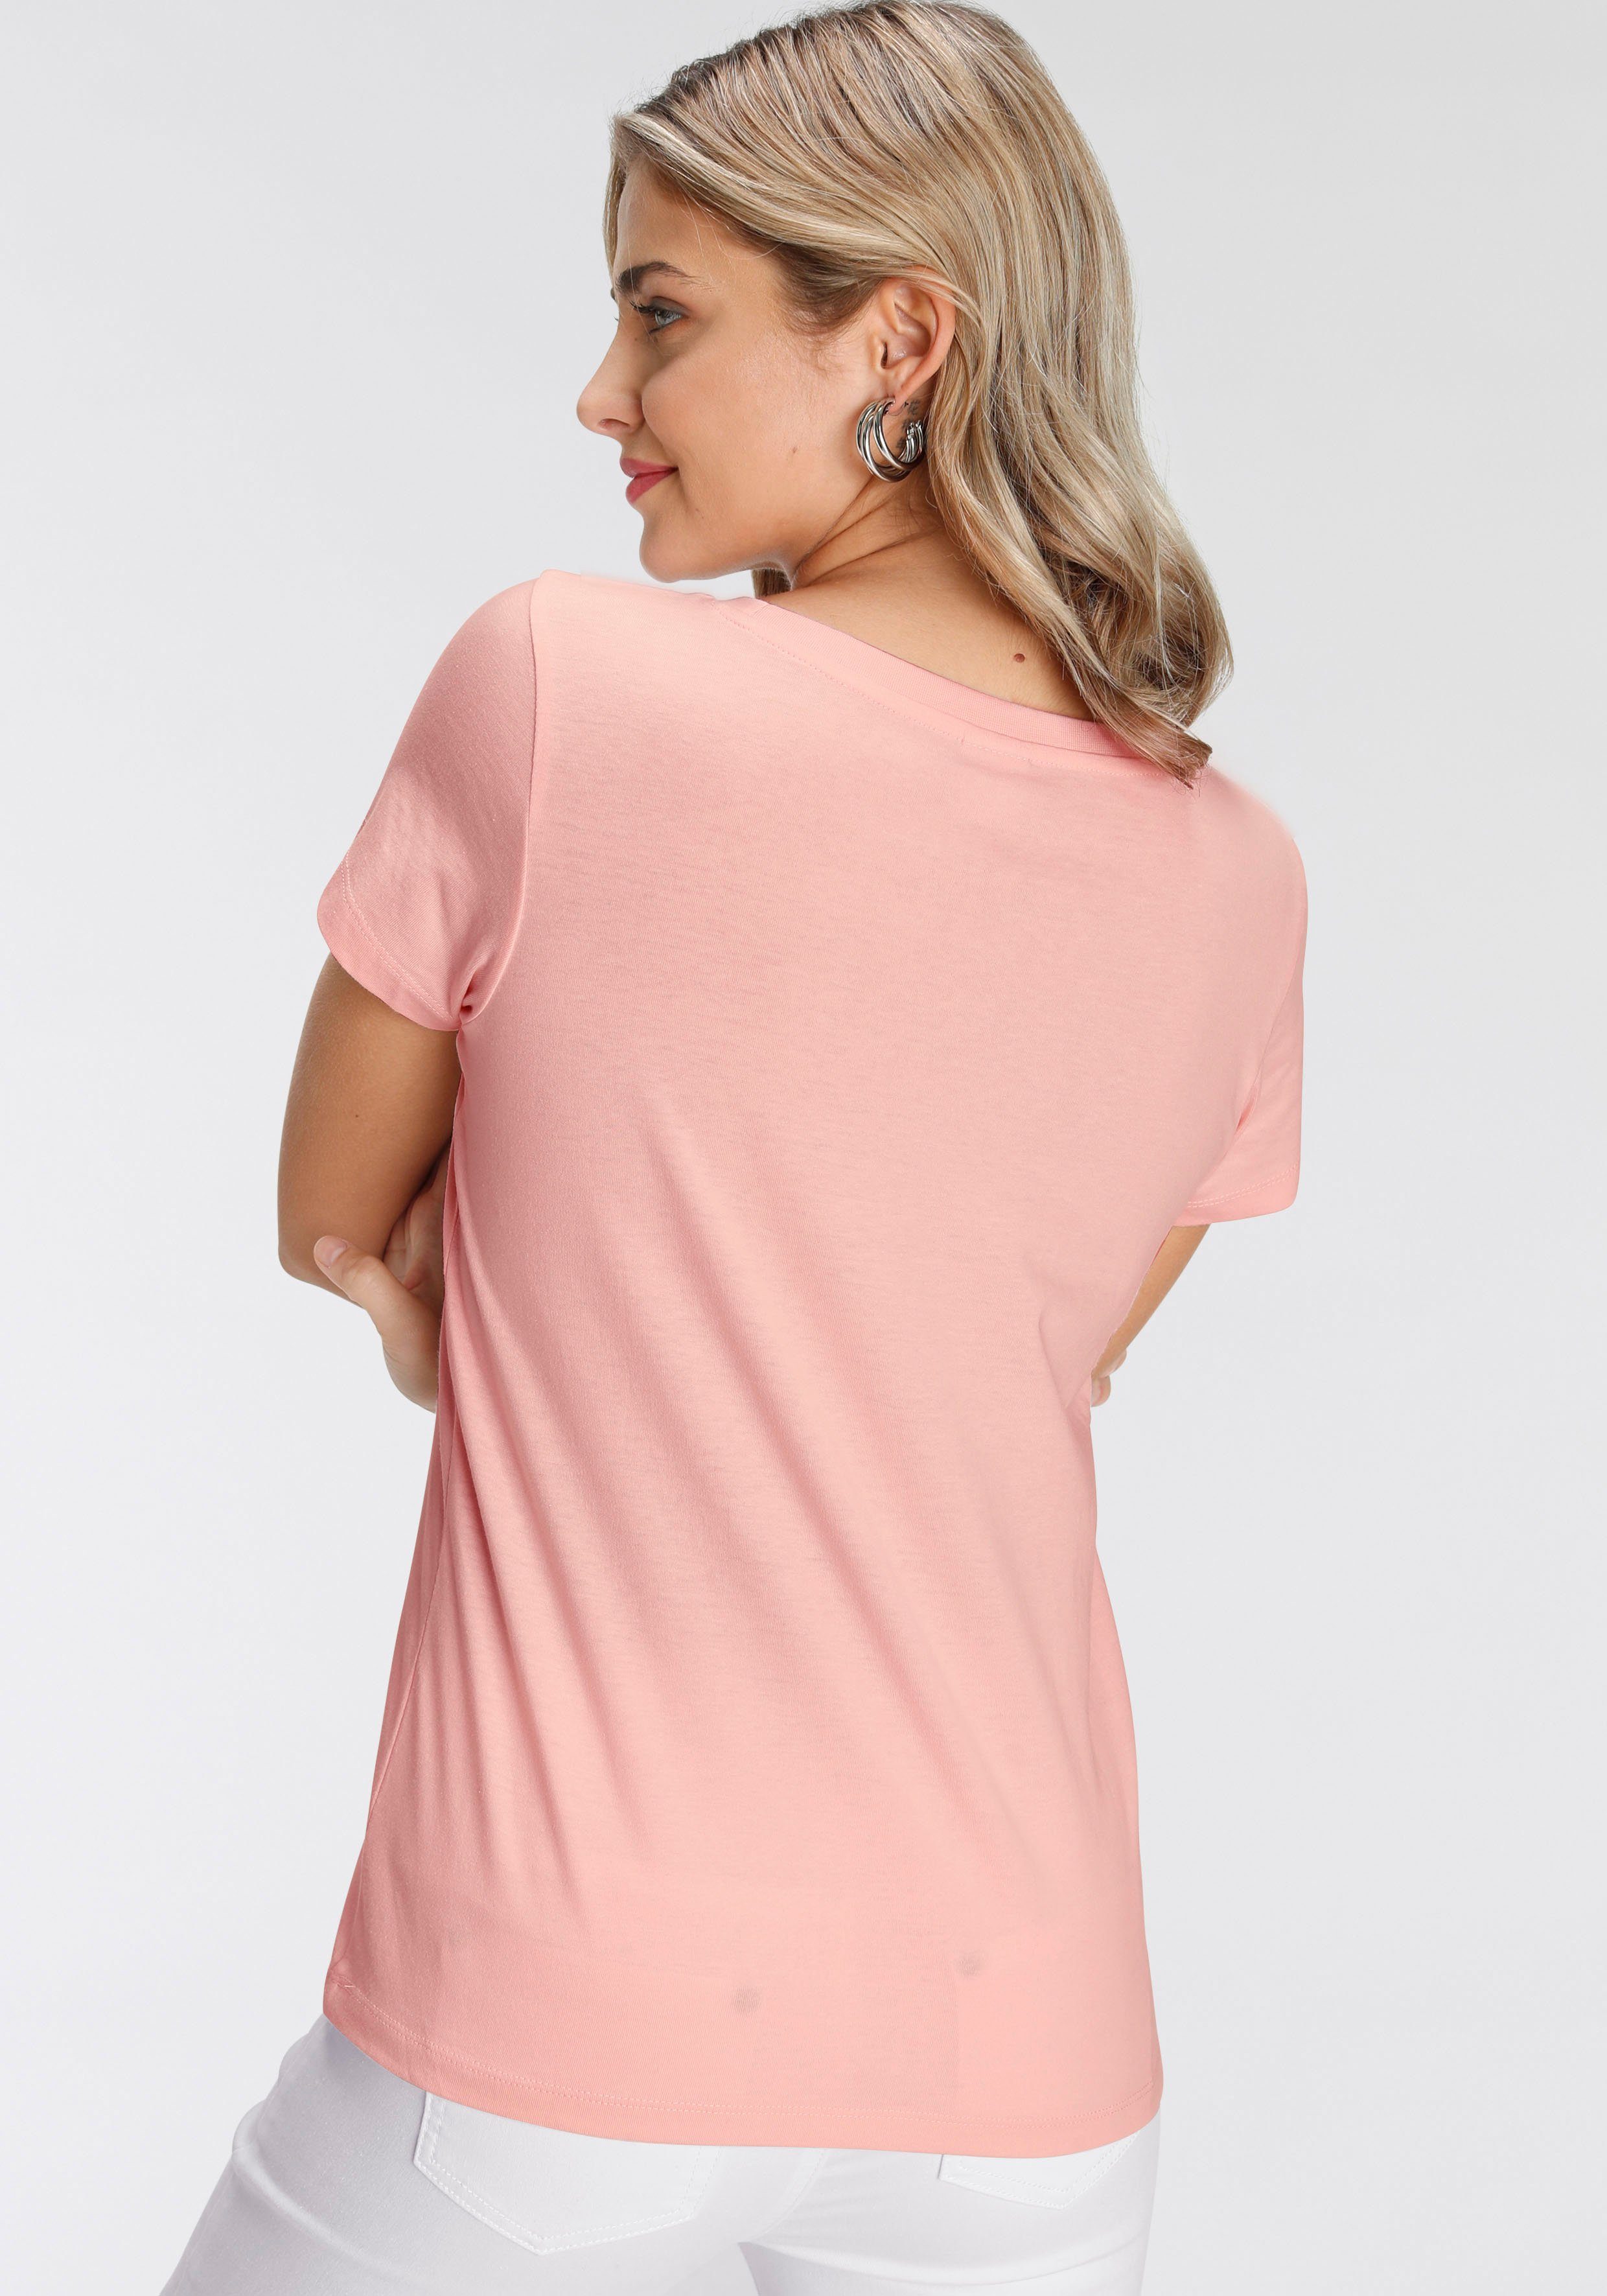 rosa modischen Print-Shirt verschiedenen AJC Designs in